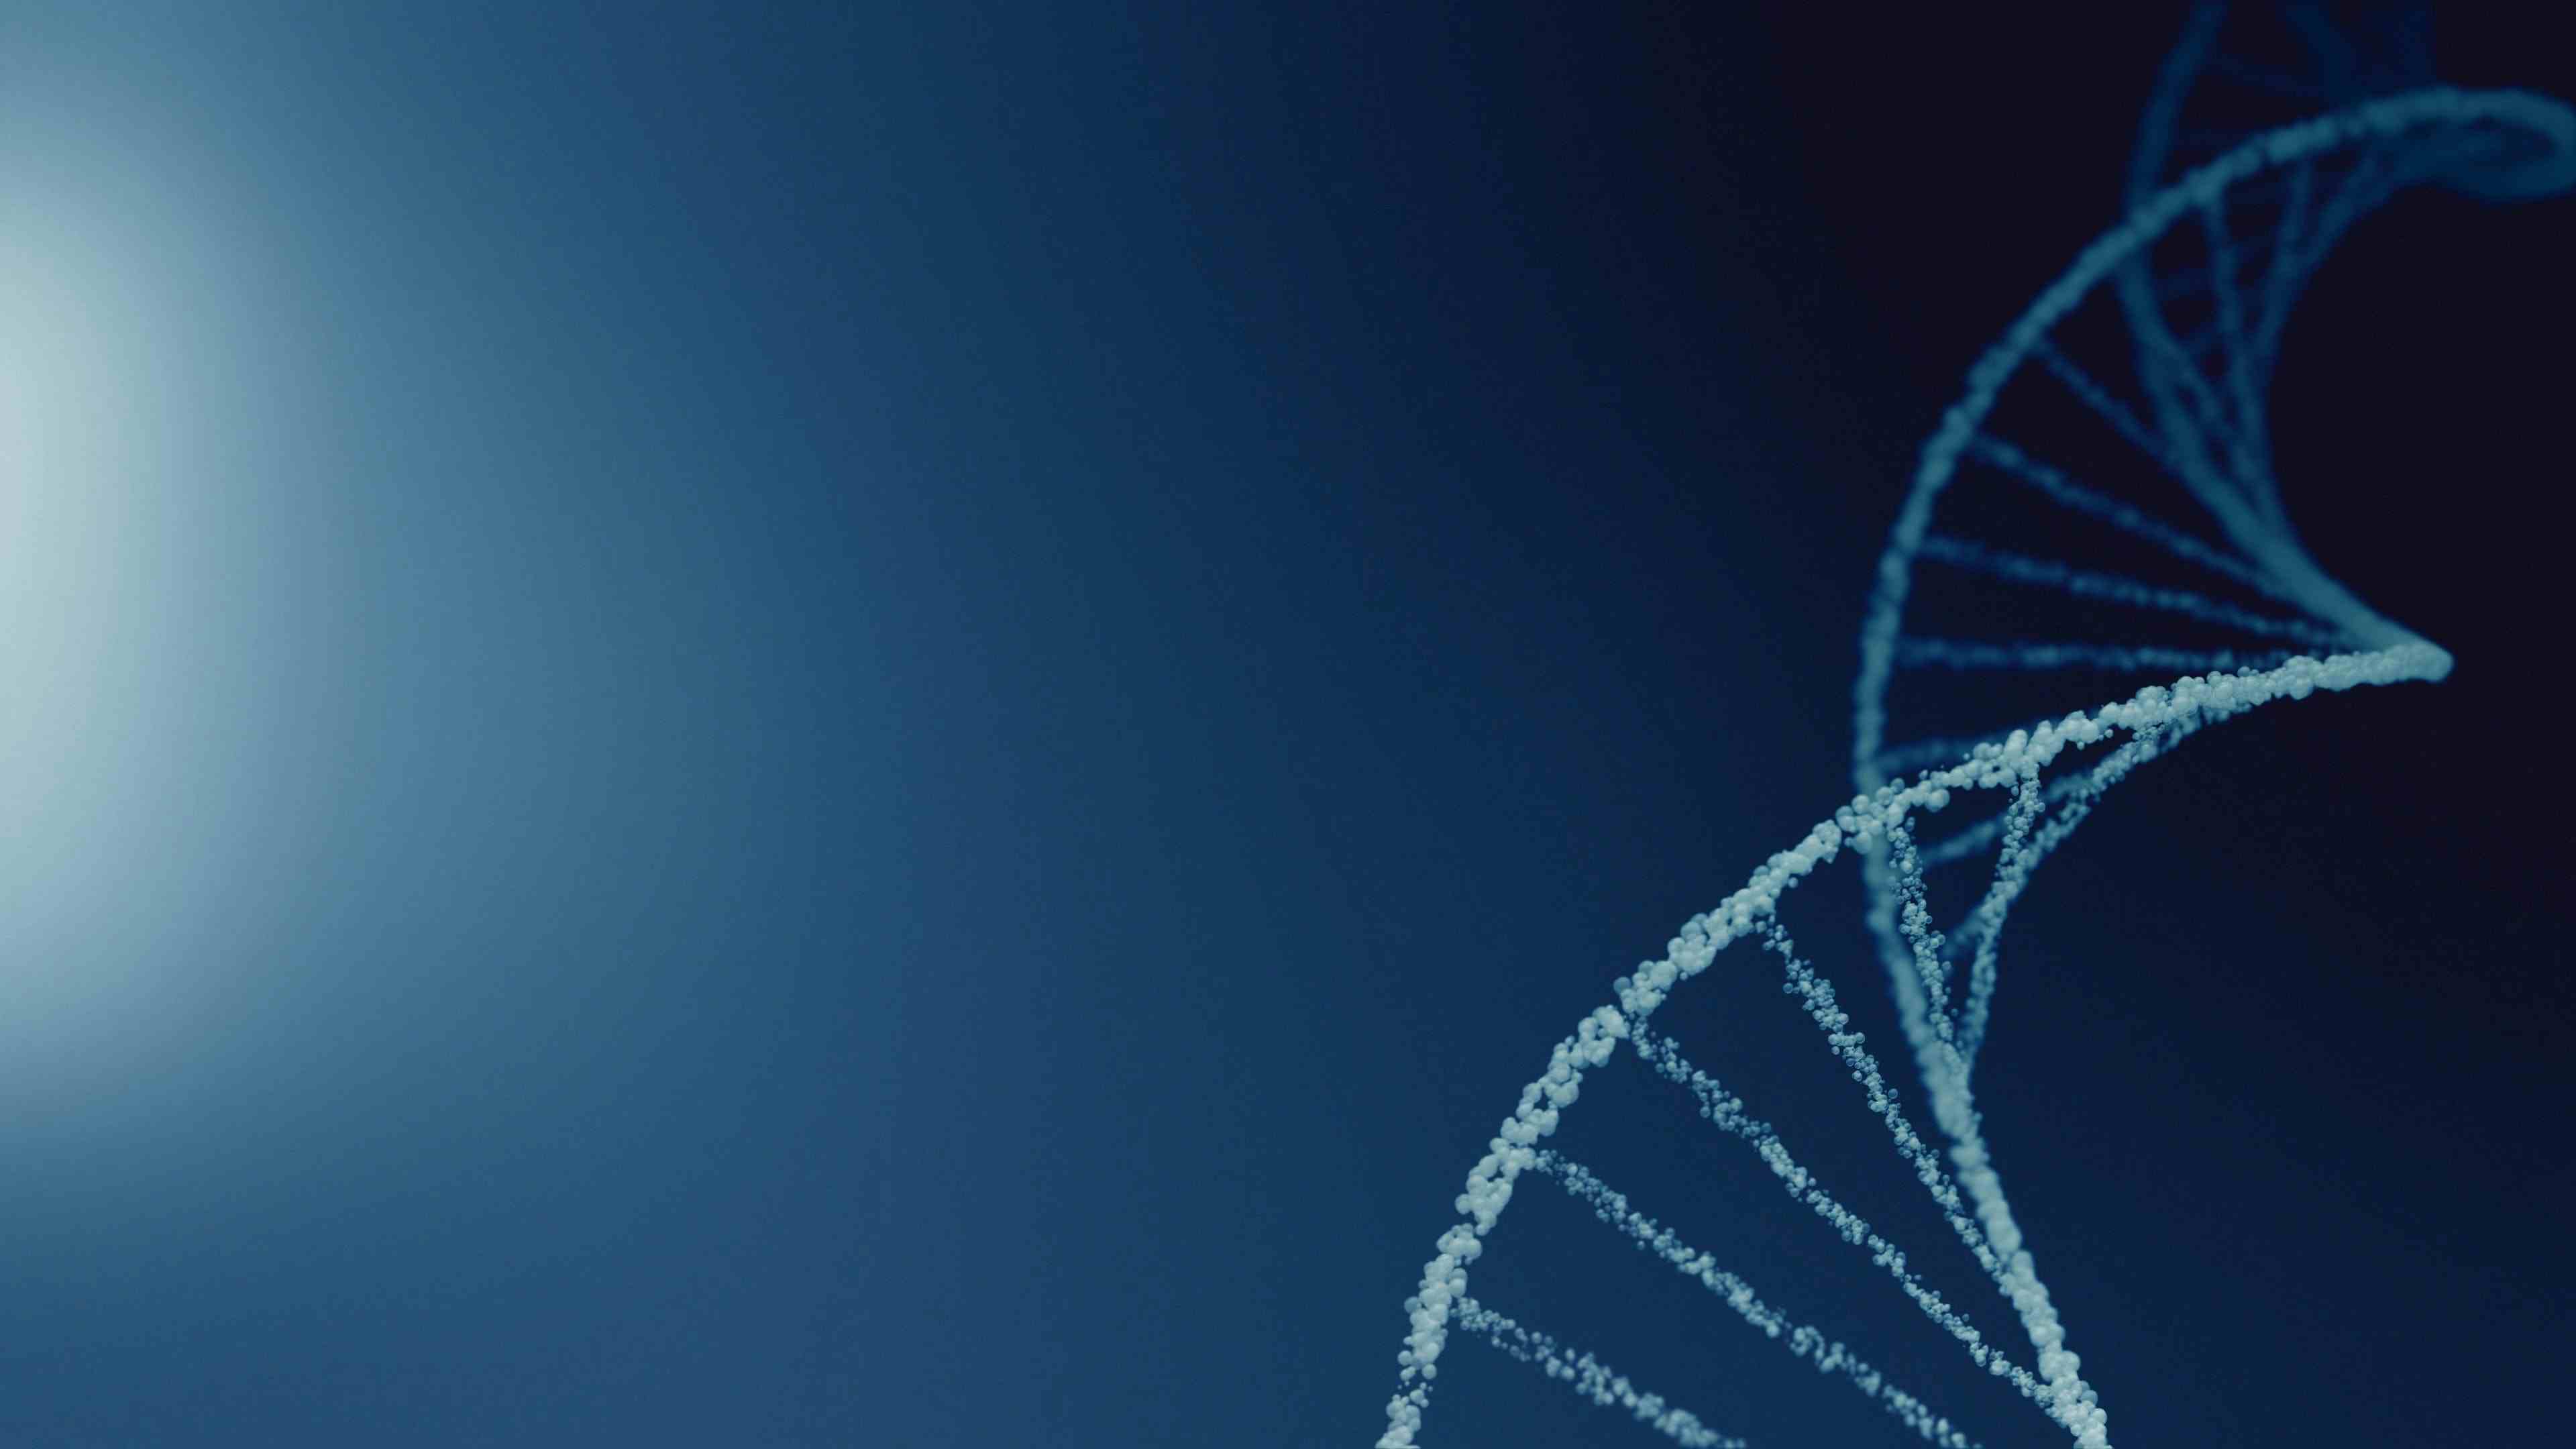 Digital image of DNA strand